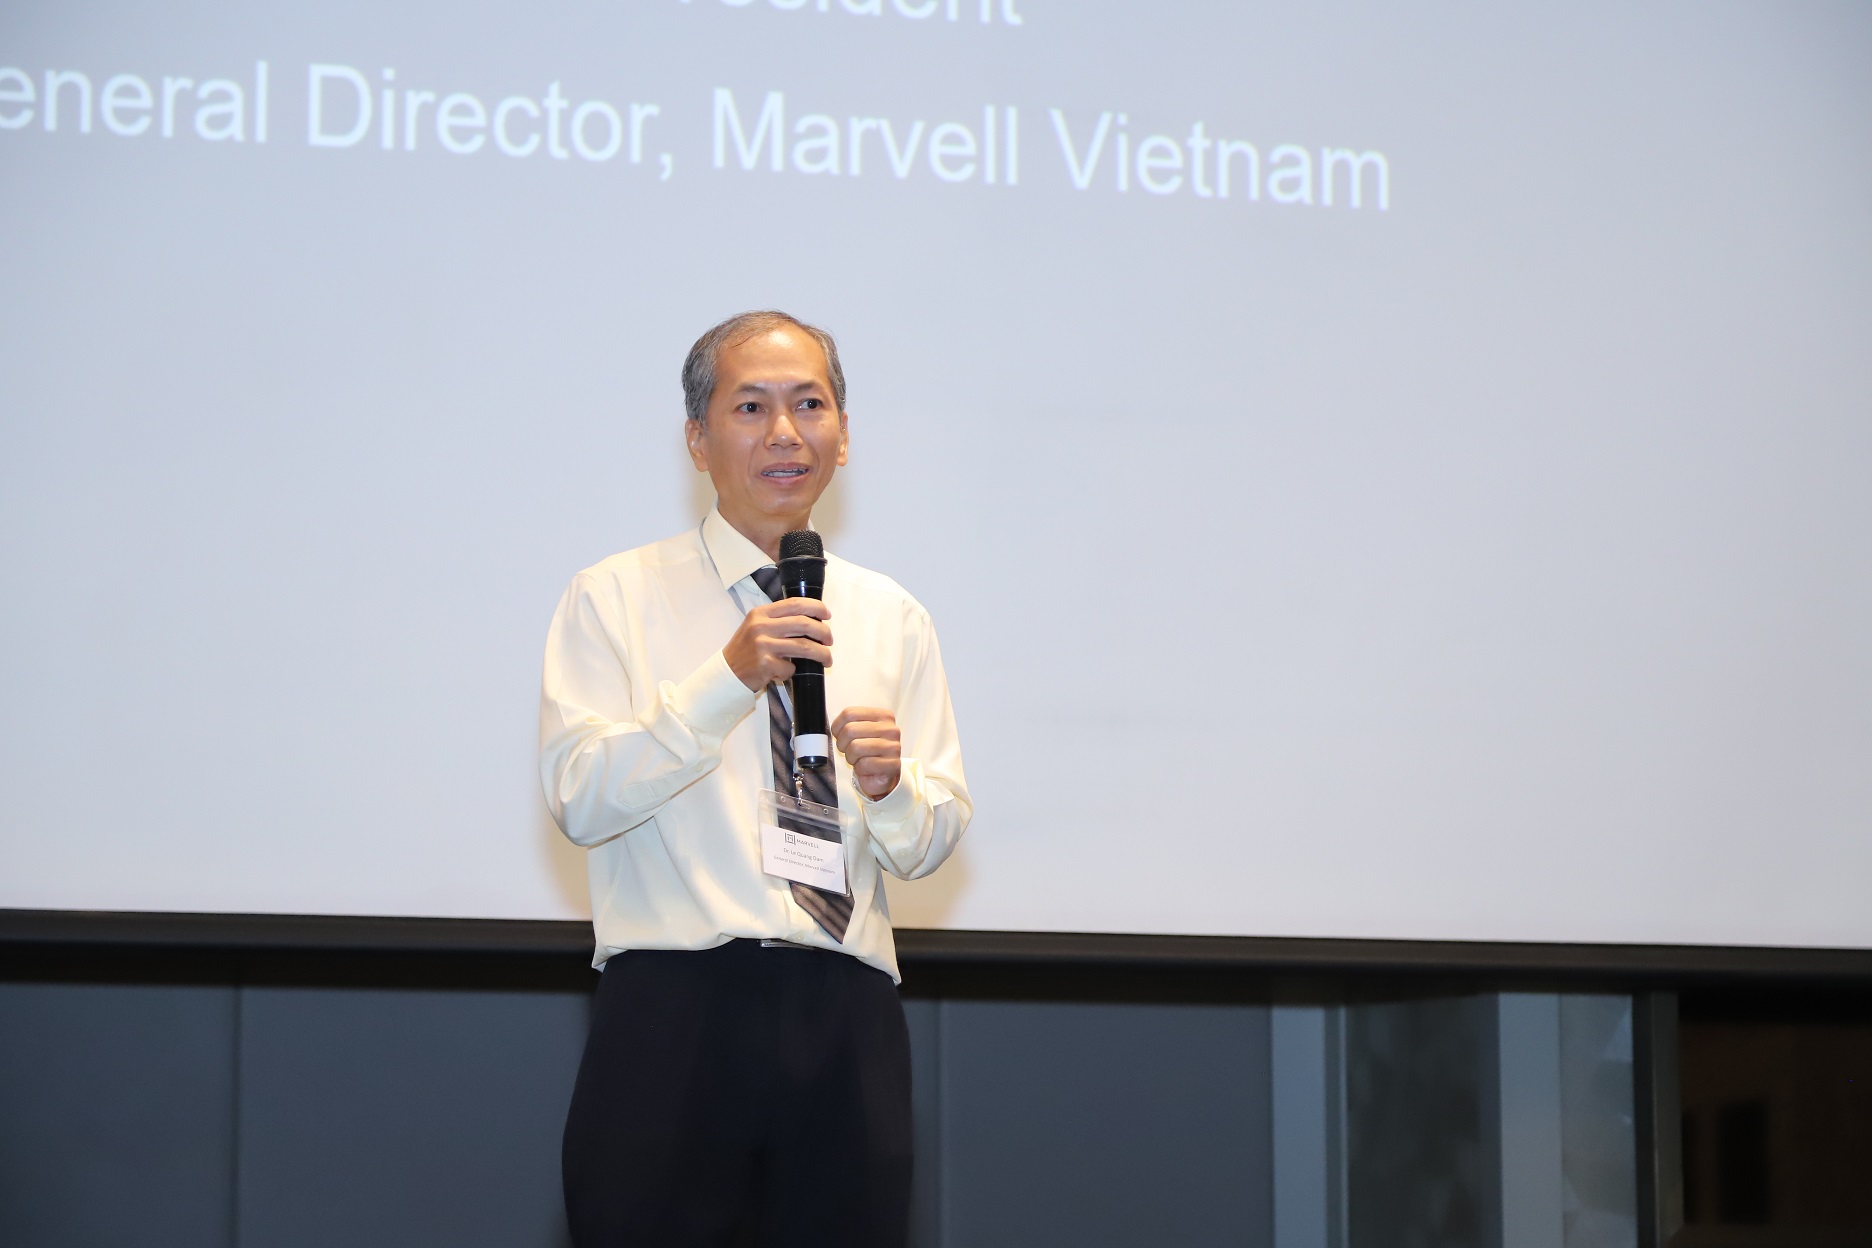 Trung tâm Thiết kế Vi mạch lớn, hướng đến AI và công nghệ đám mây của Marvell được đặt tại Việt Nam - TS. Le Quang Dam Tong giam doc Marvell Viet Nam